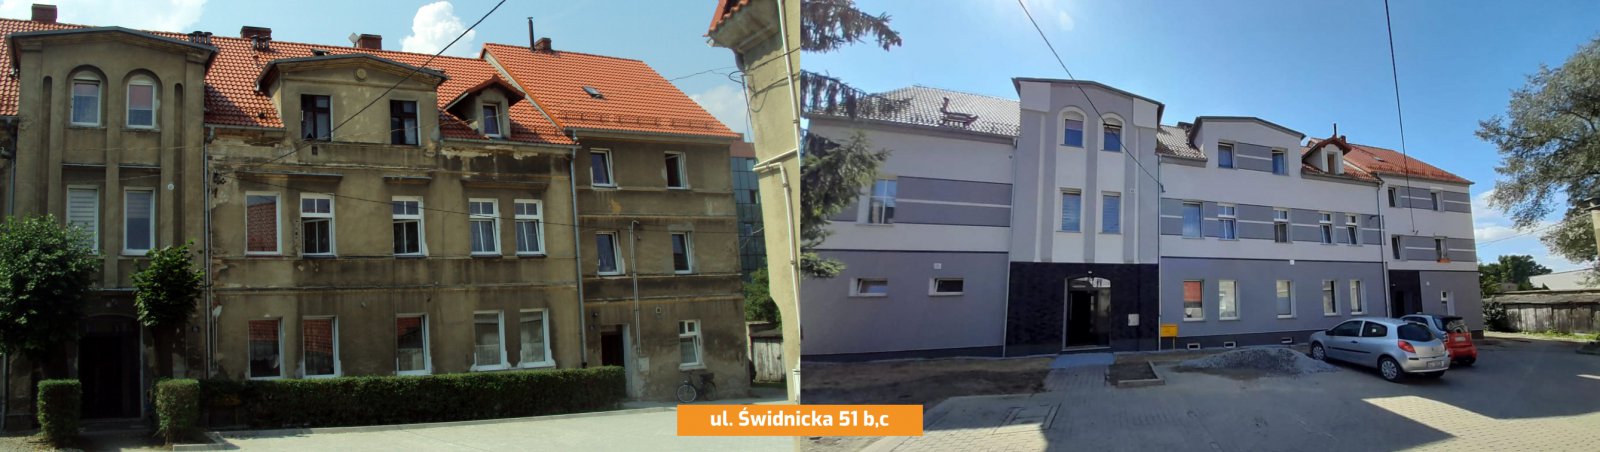 Budynek przed i po wykonaniu remontu elewacji